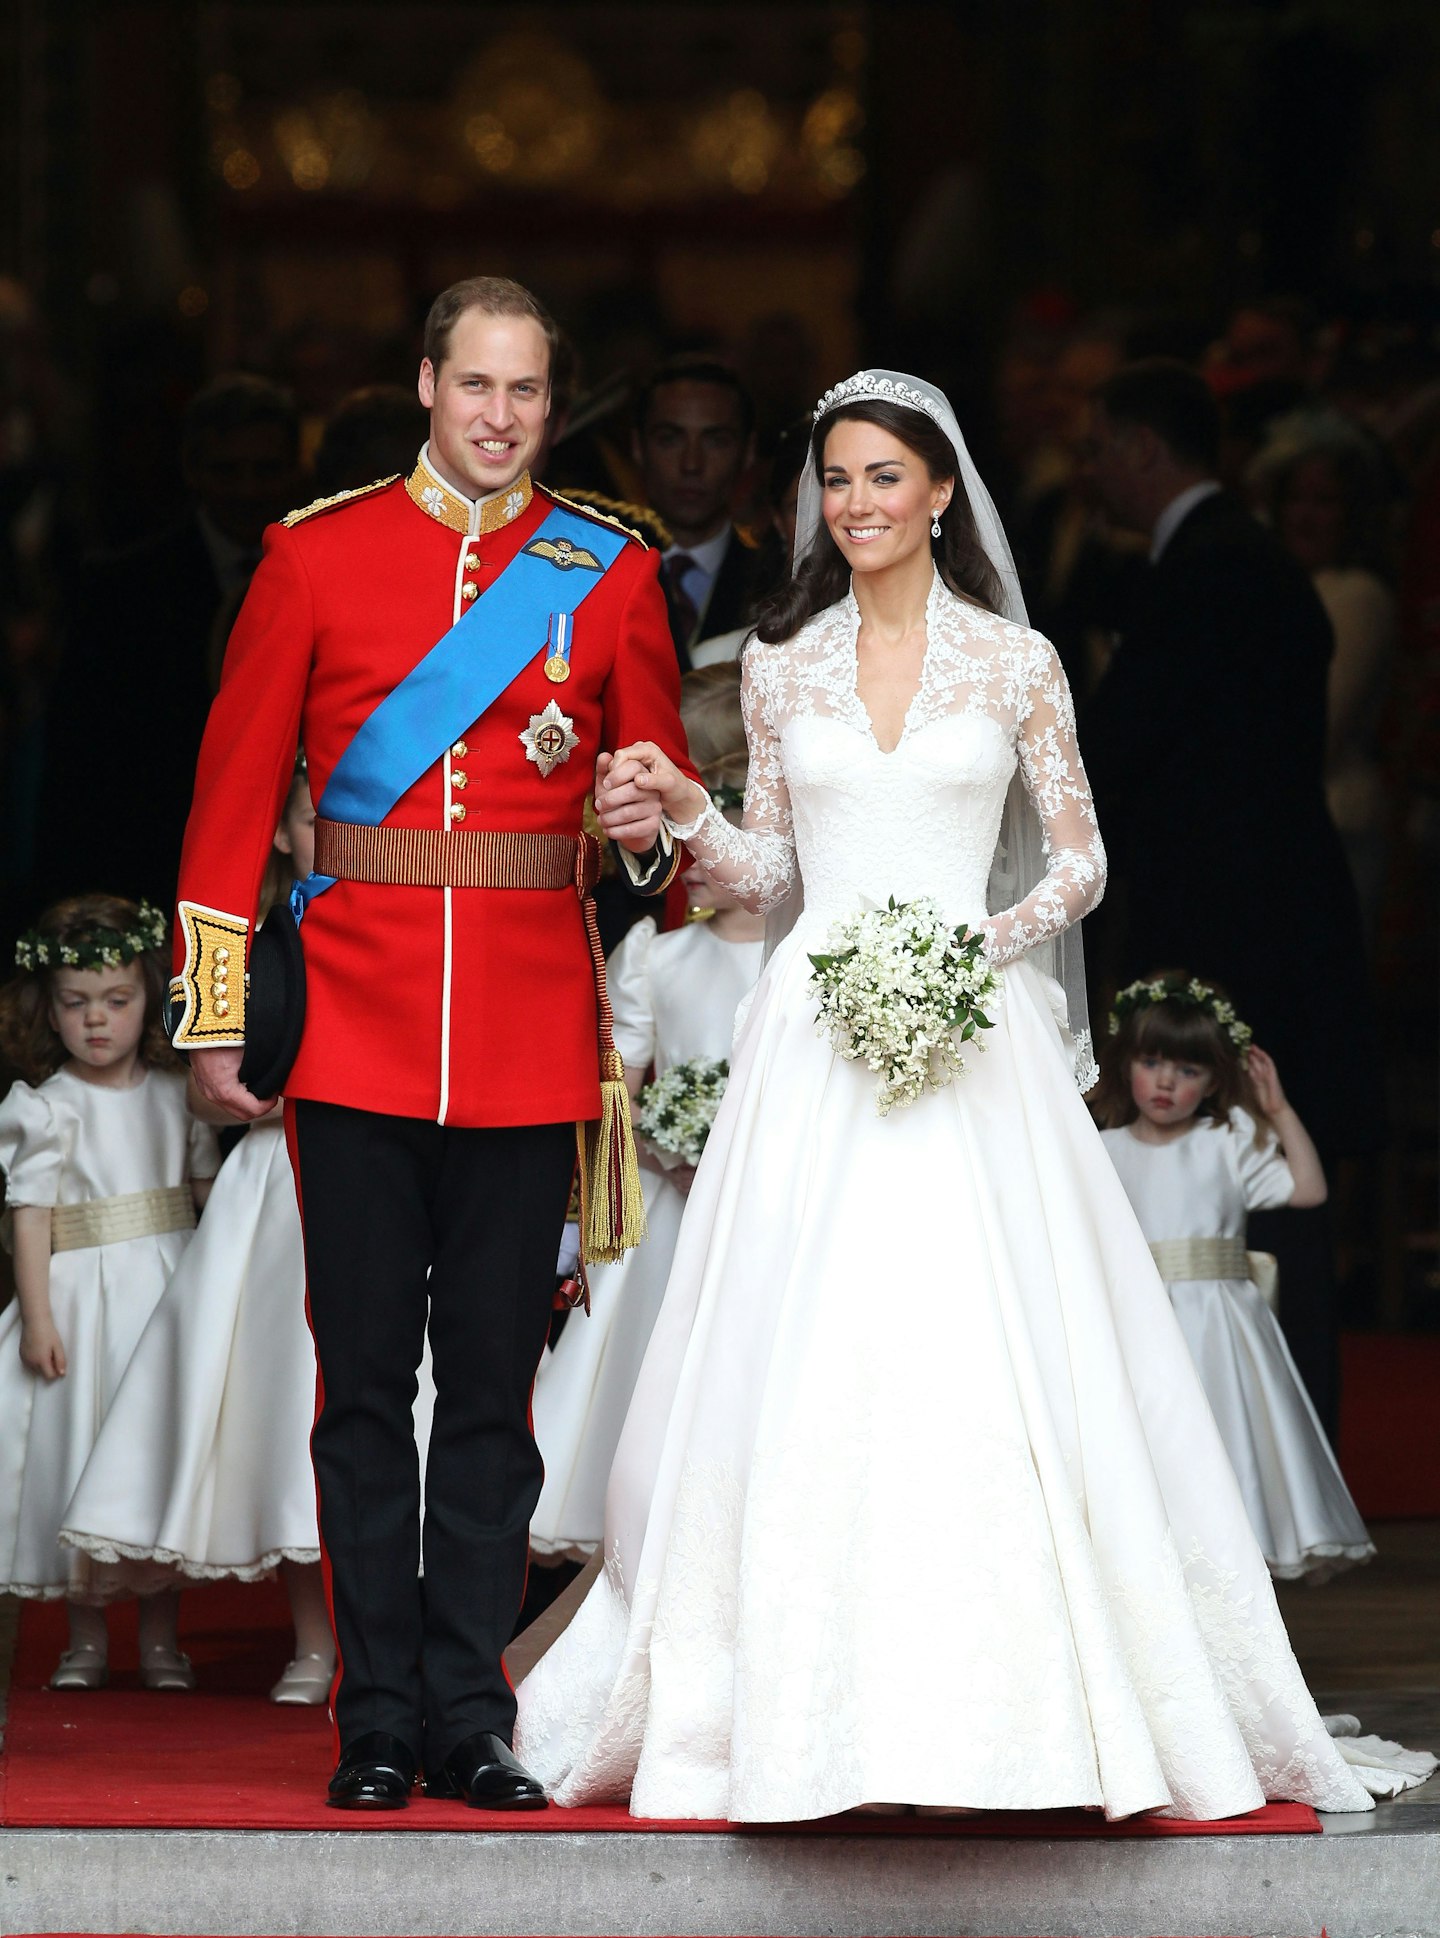 Royal wedding dresses